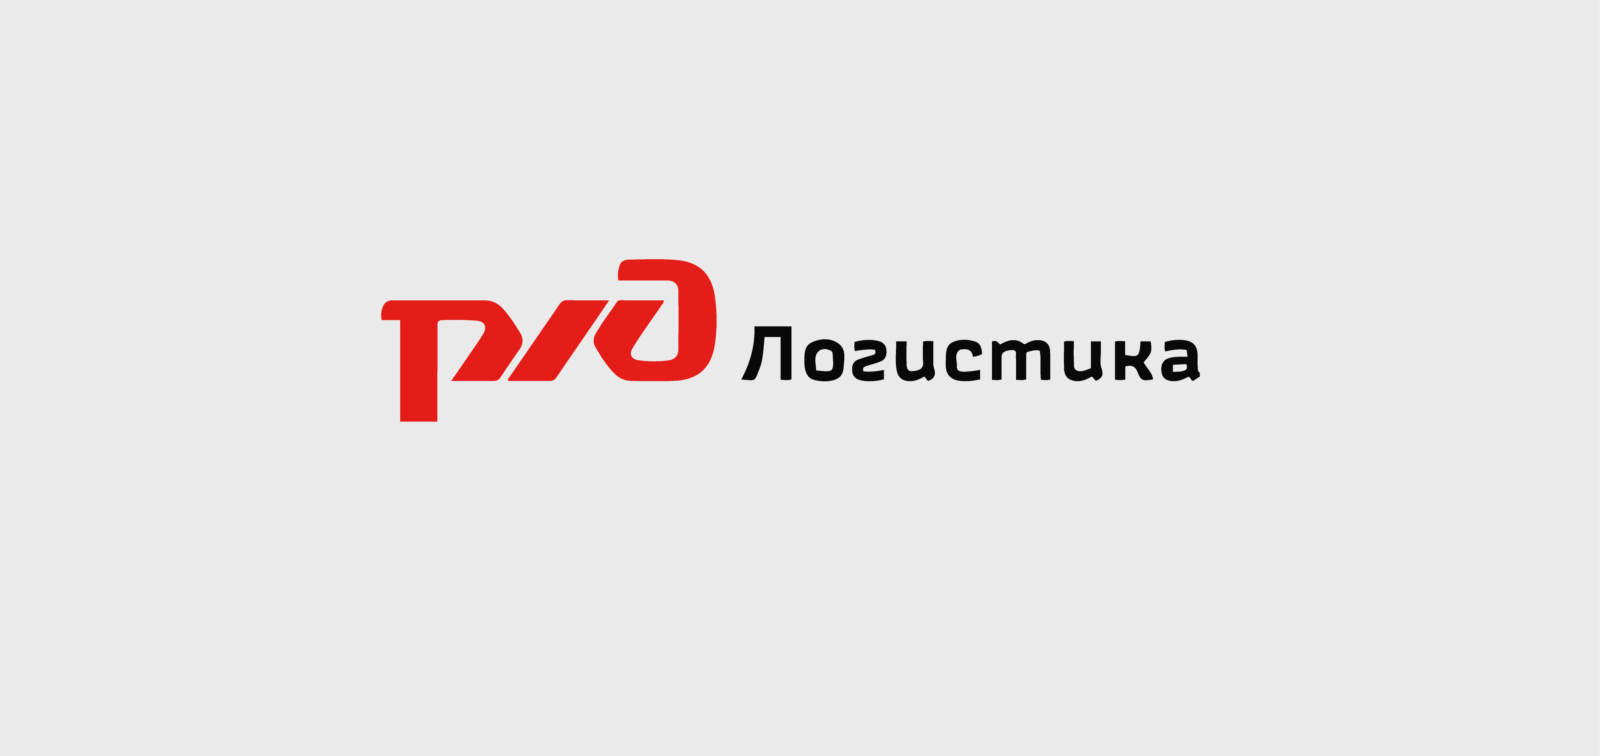 ОАО РЖД логистика логотип